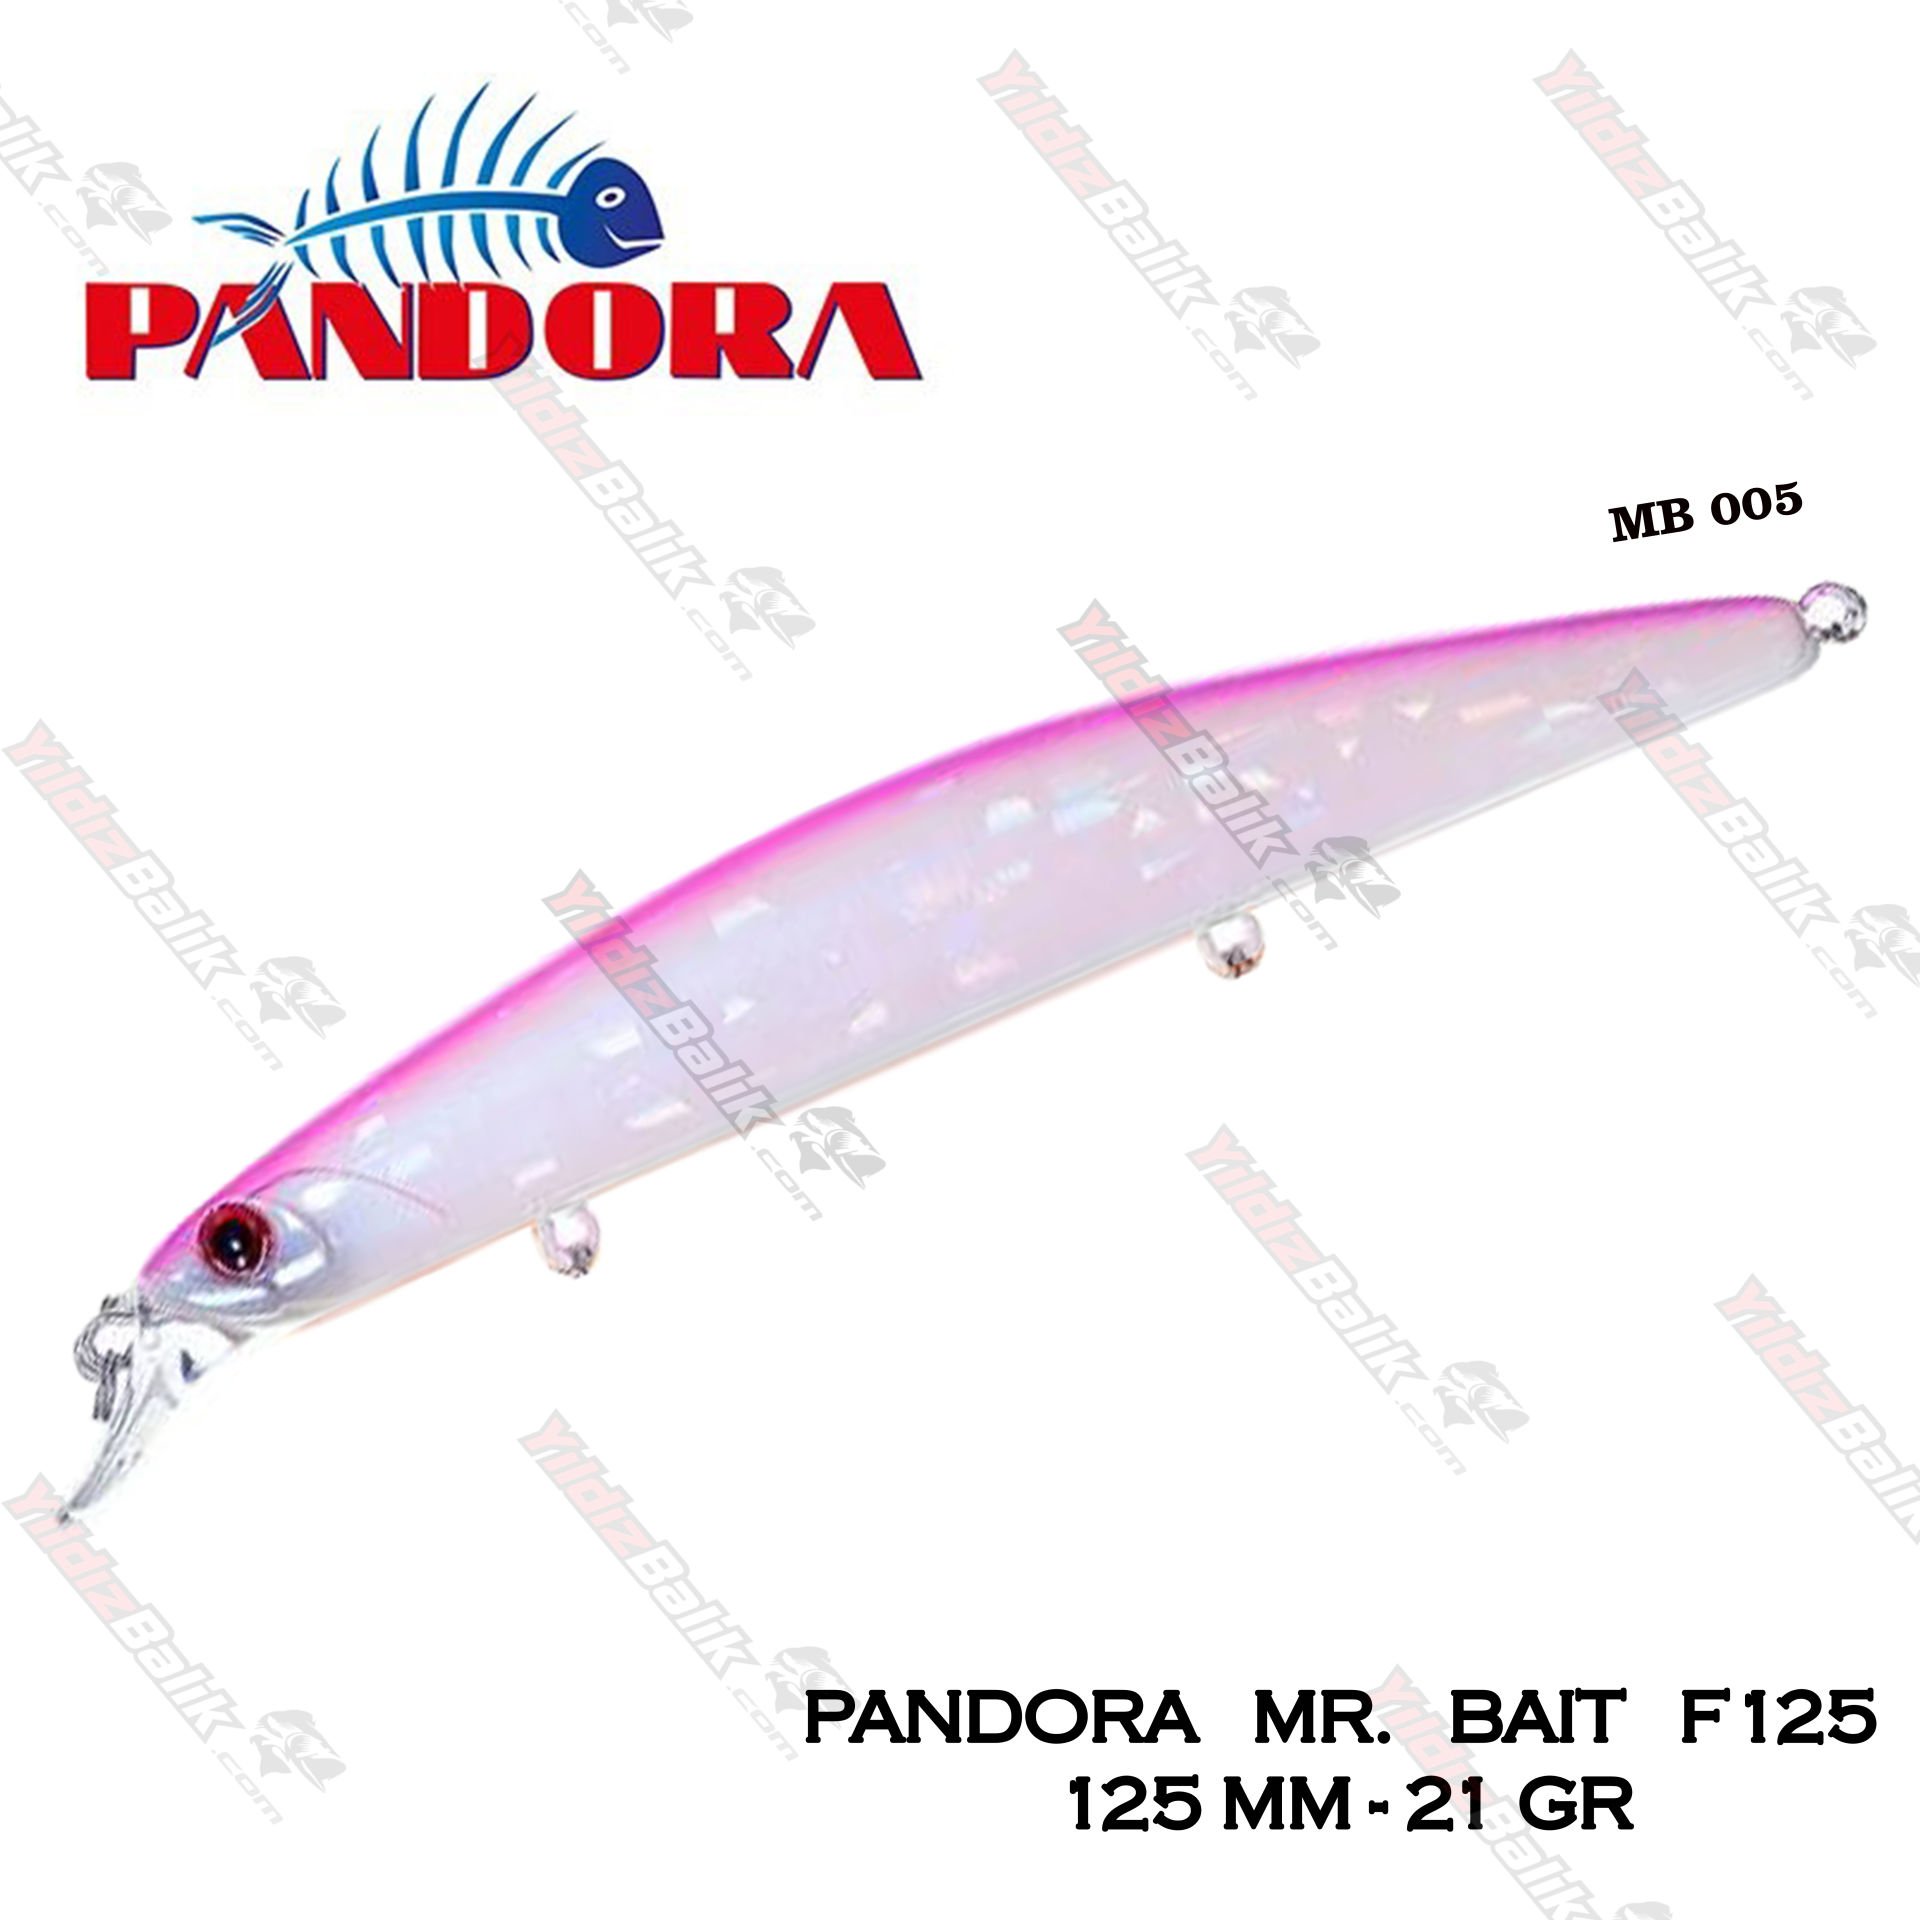 Pandora Mr.Bait F125 125 mm. 21 gr. #M005